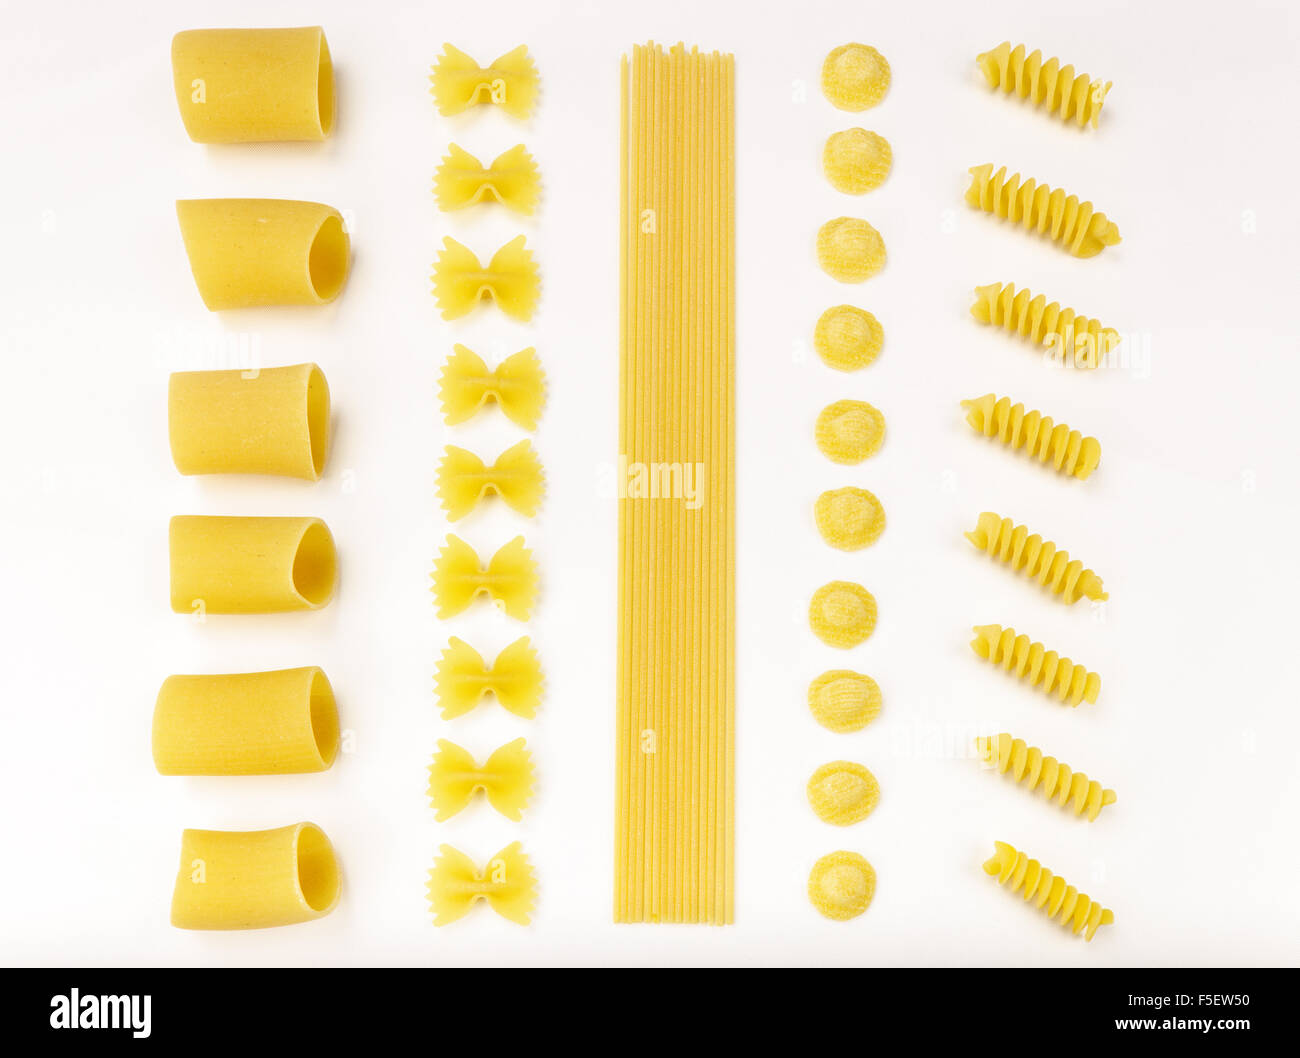 Italienische Pasta-Serie. Paccheri, Farfalle, Spaghetti, Orecchiette und Fusilli auf einer weißen Tischdecke. Stockfoto